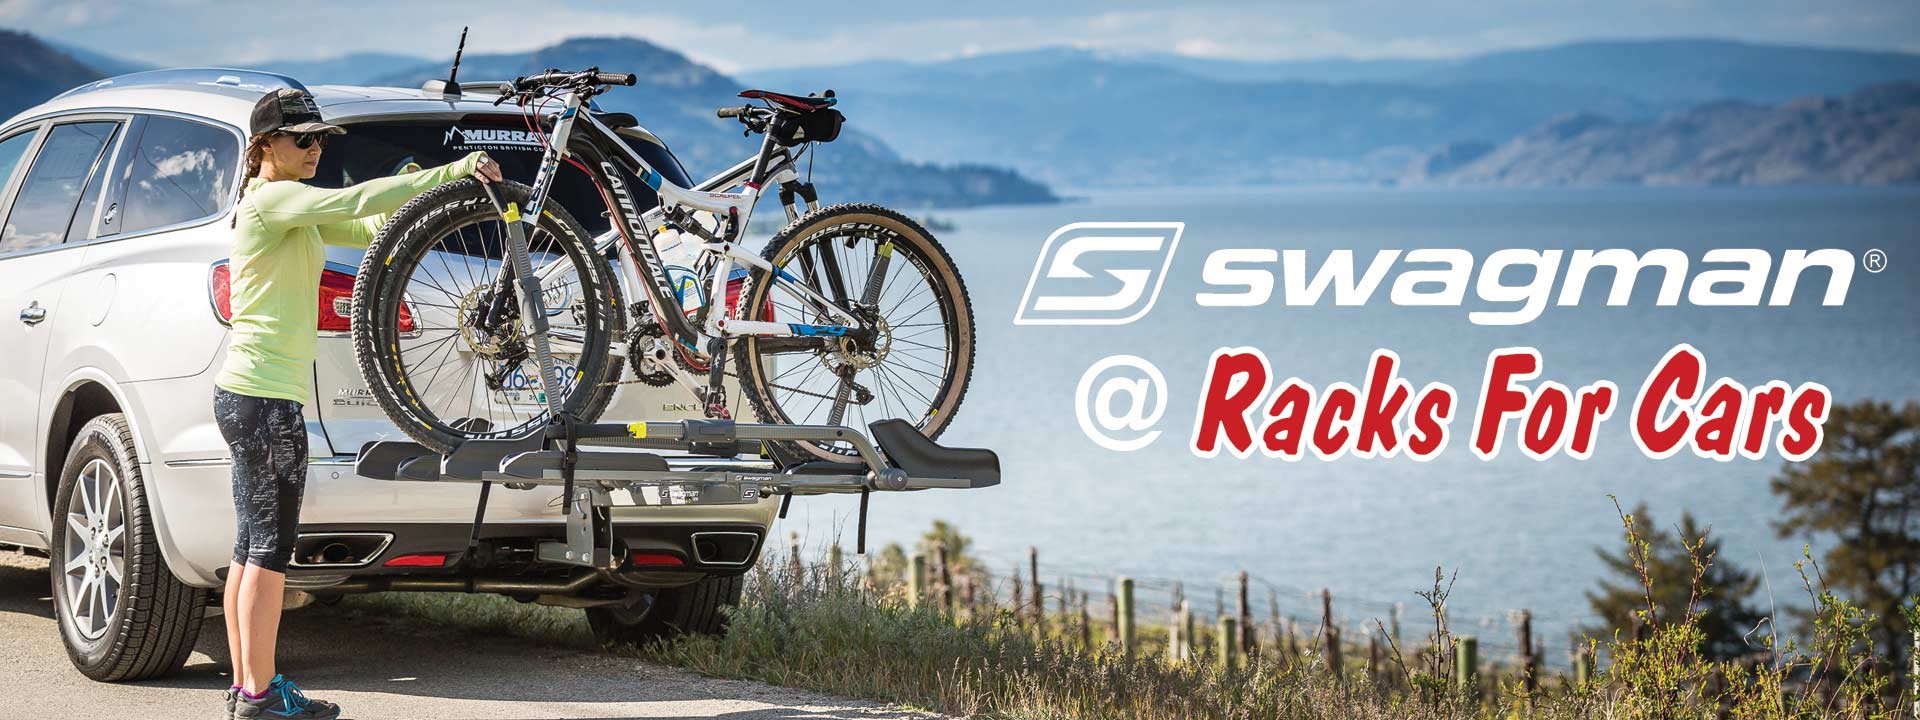 swagman rv bike rack